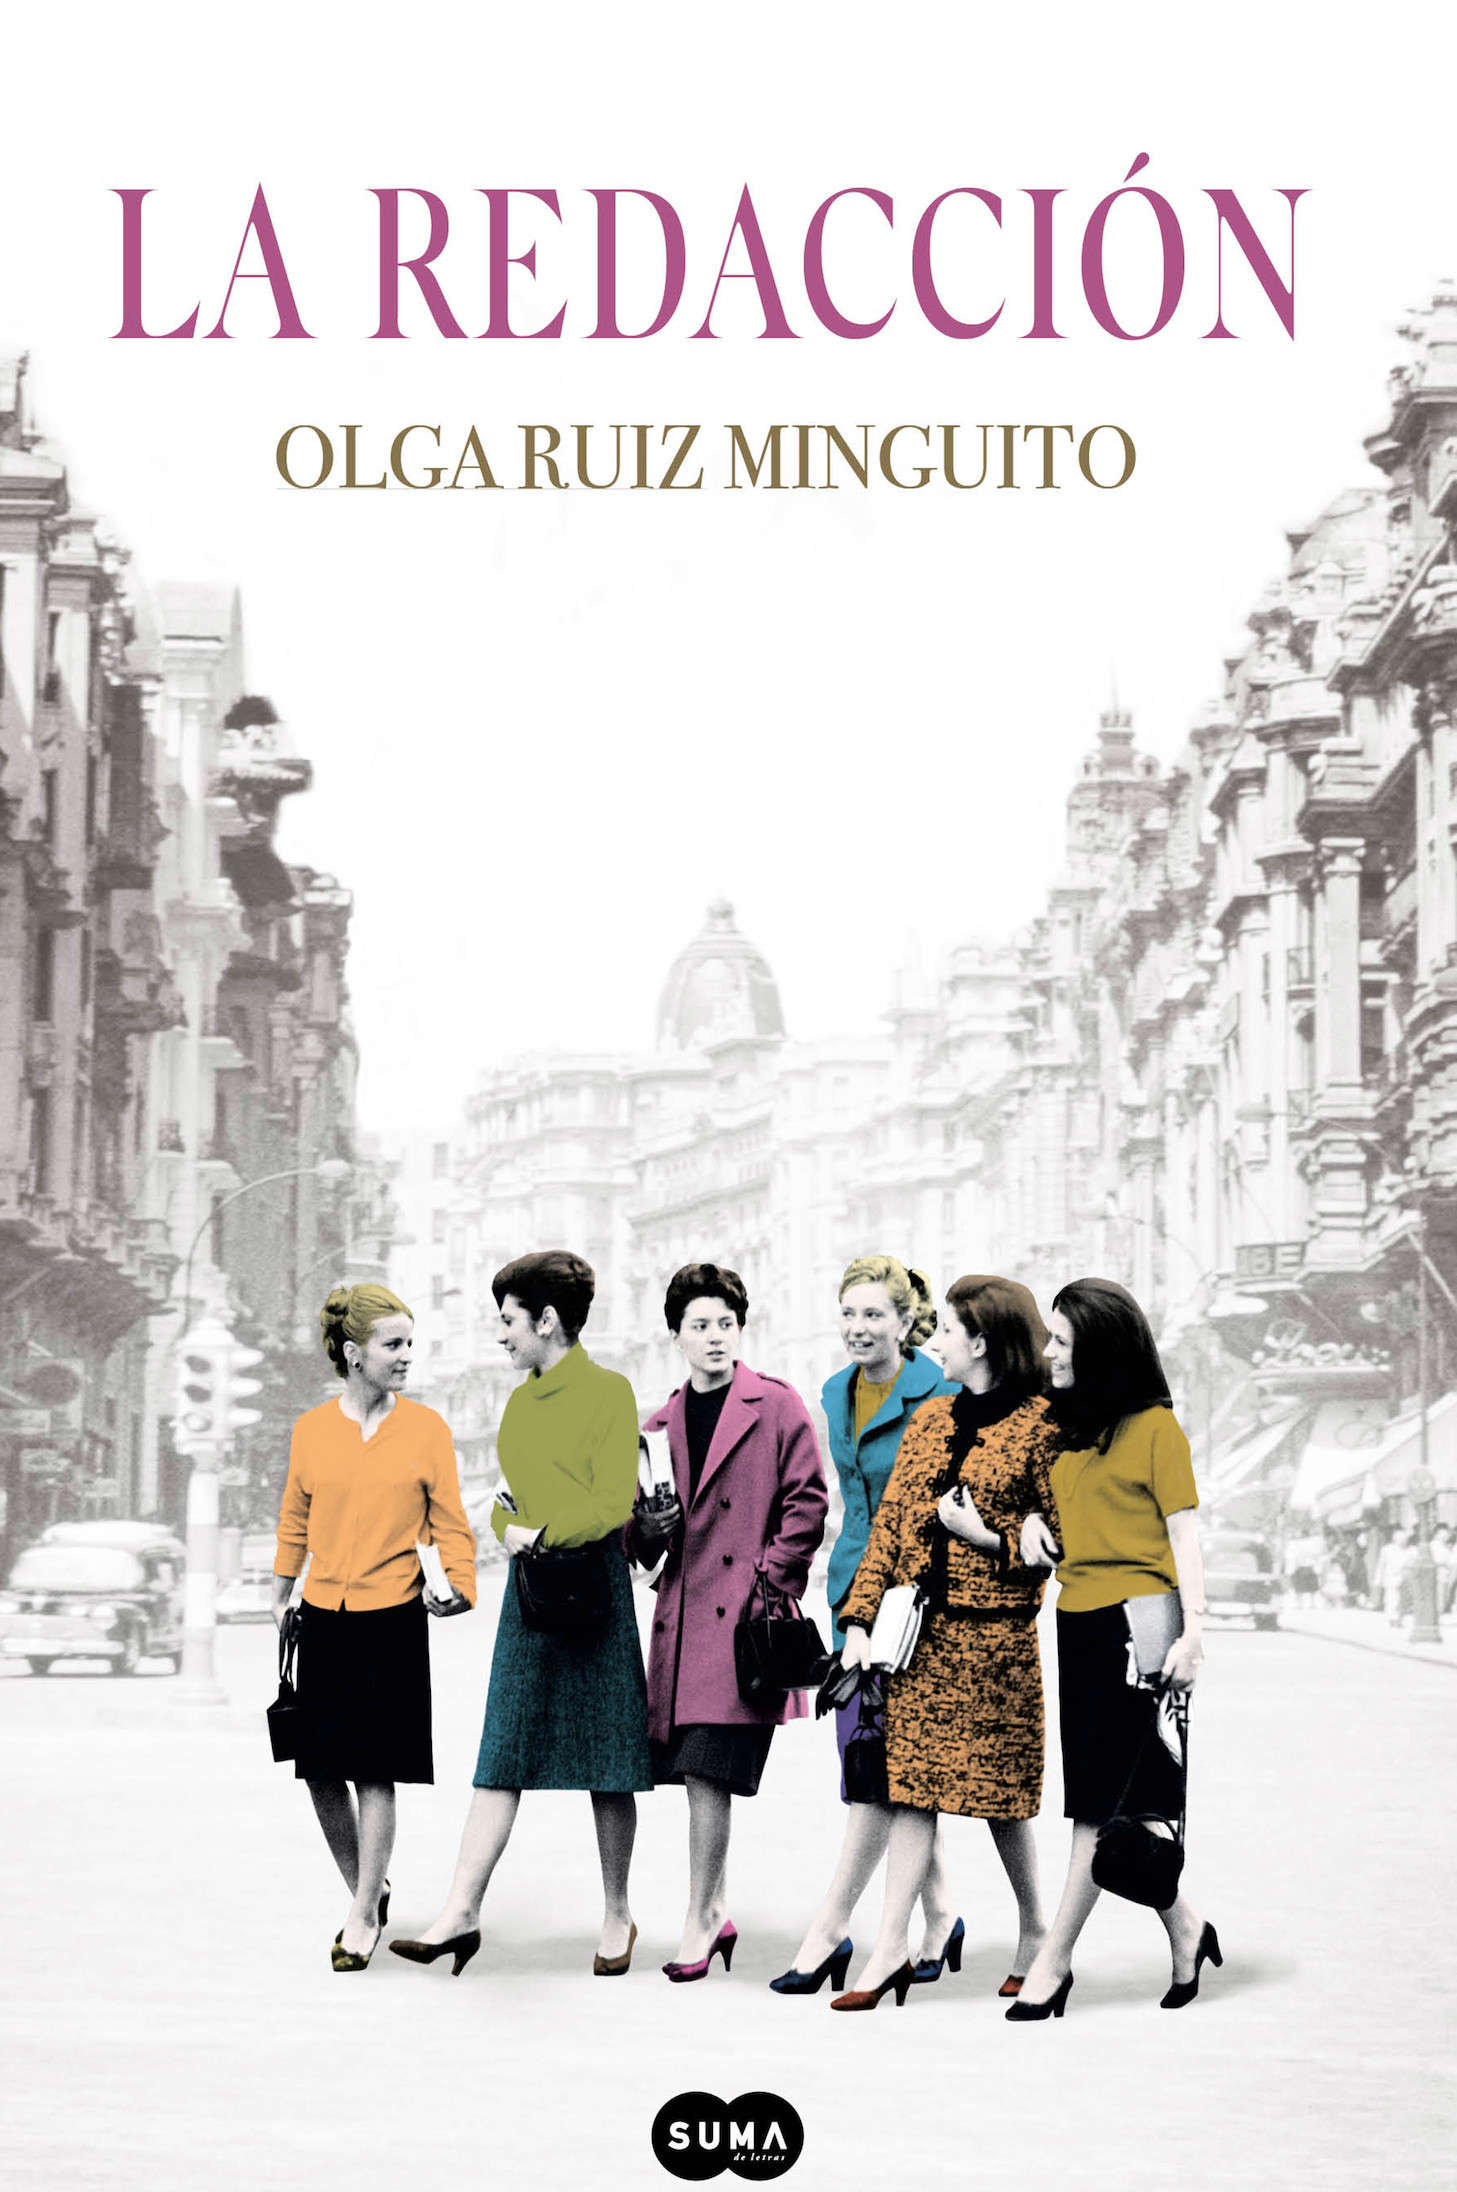 La redacción, libro de Olga Ruiz Minguito